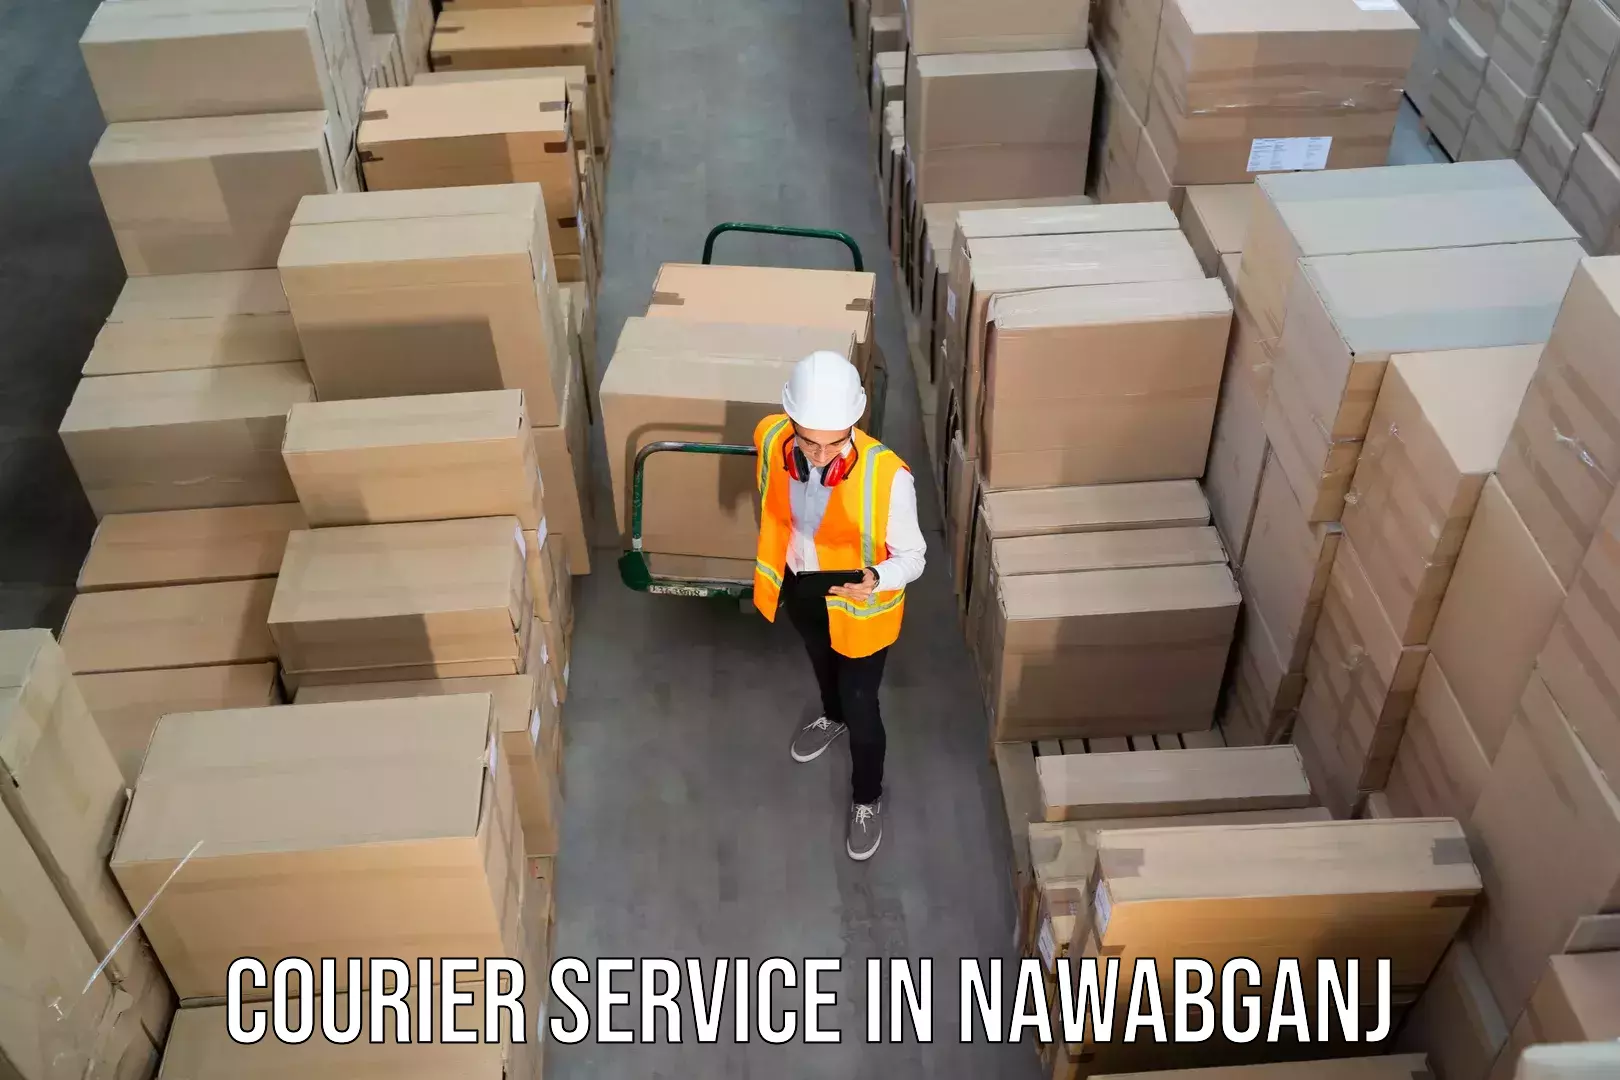 Express delivery capabilities in Nawabganj